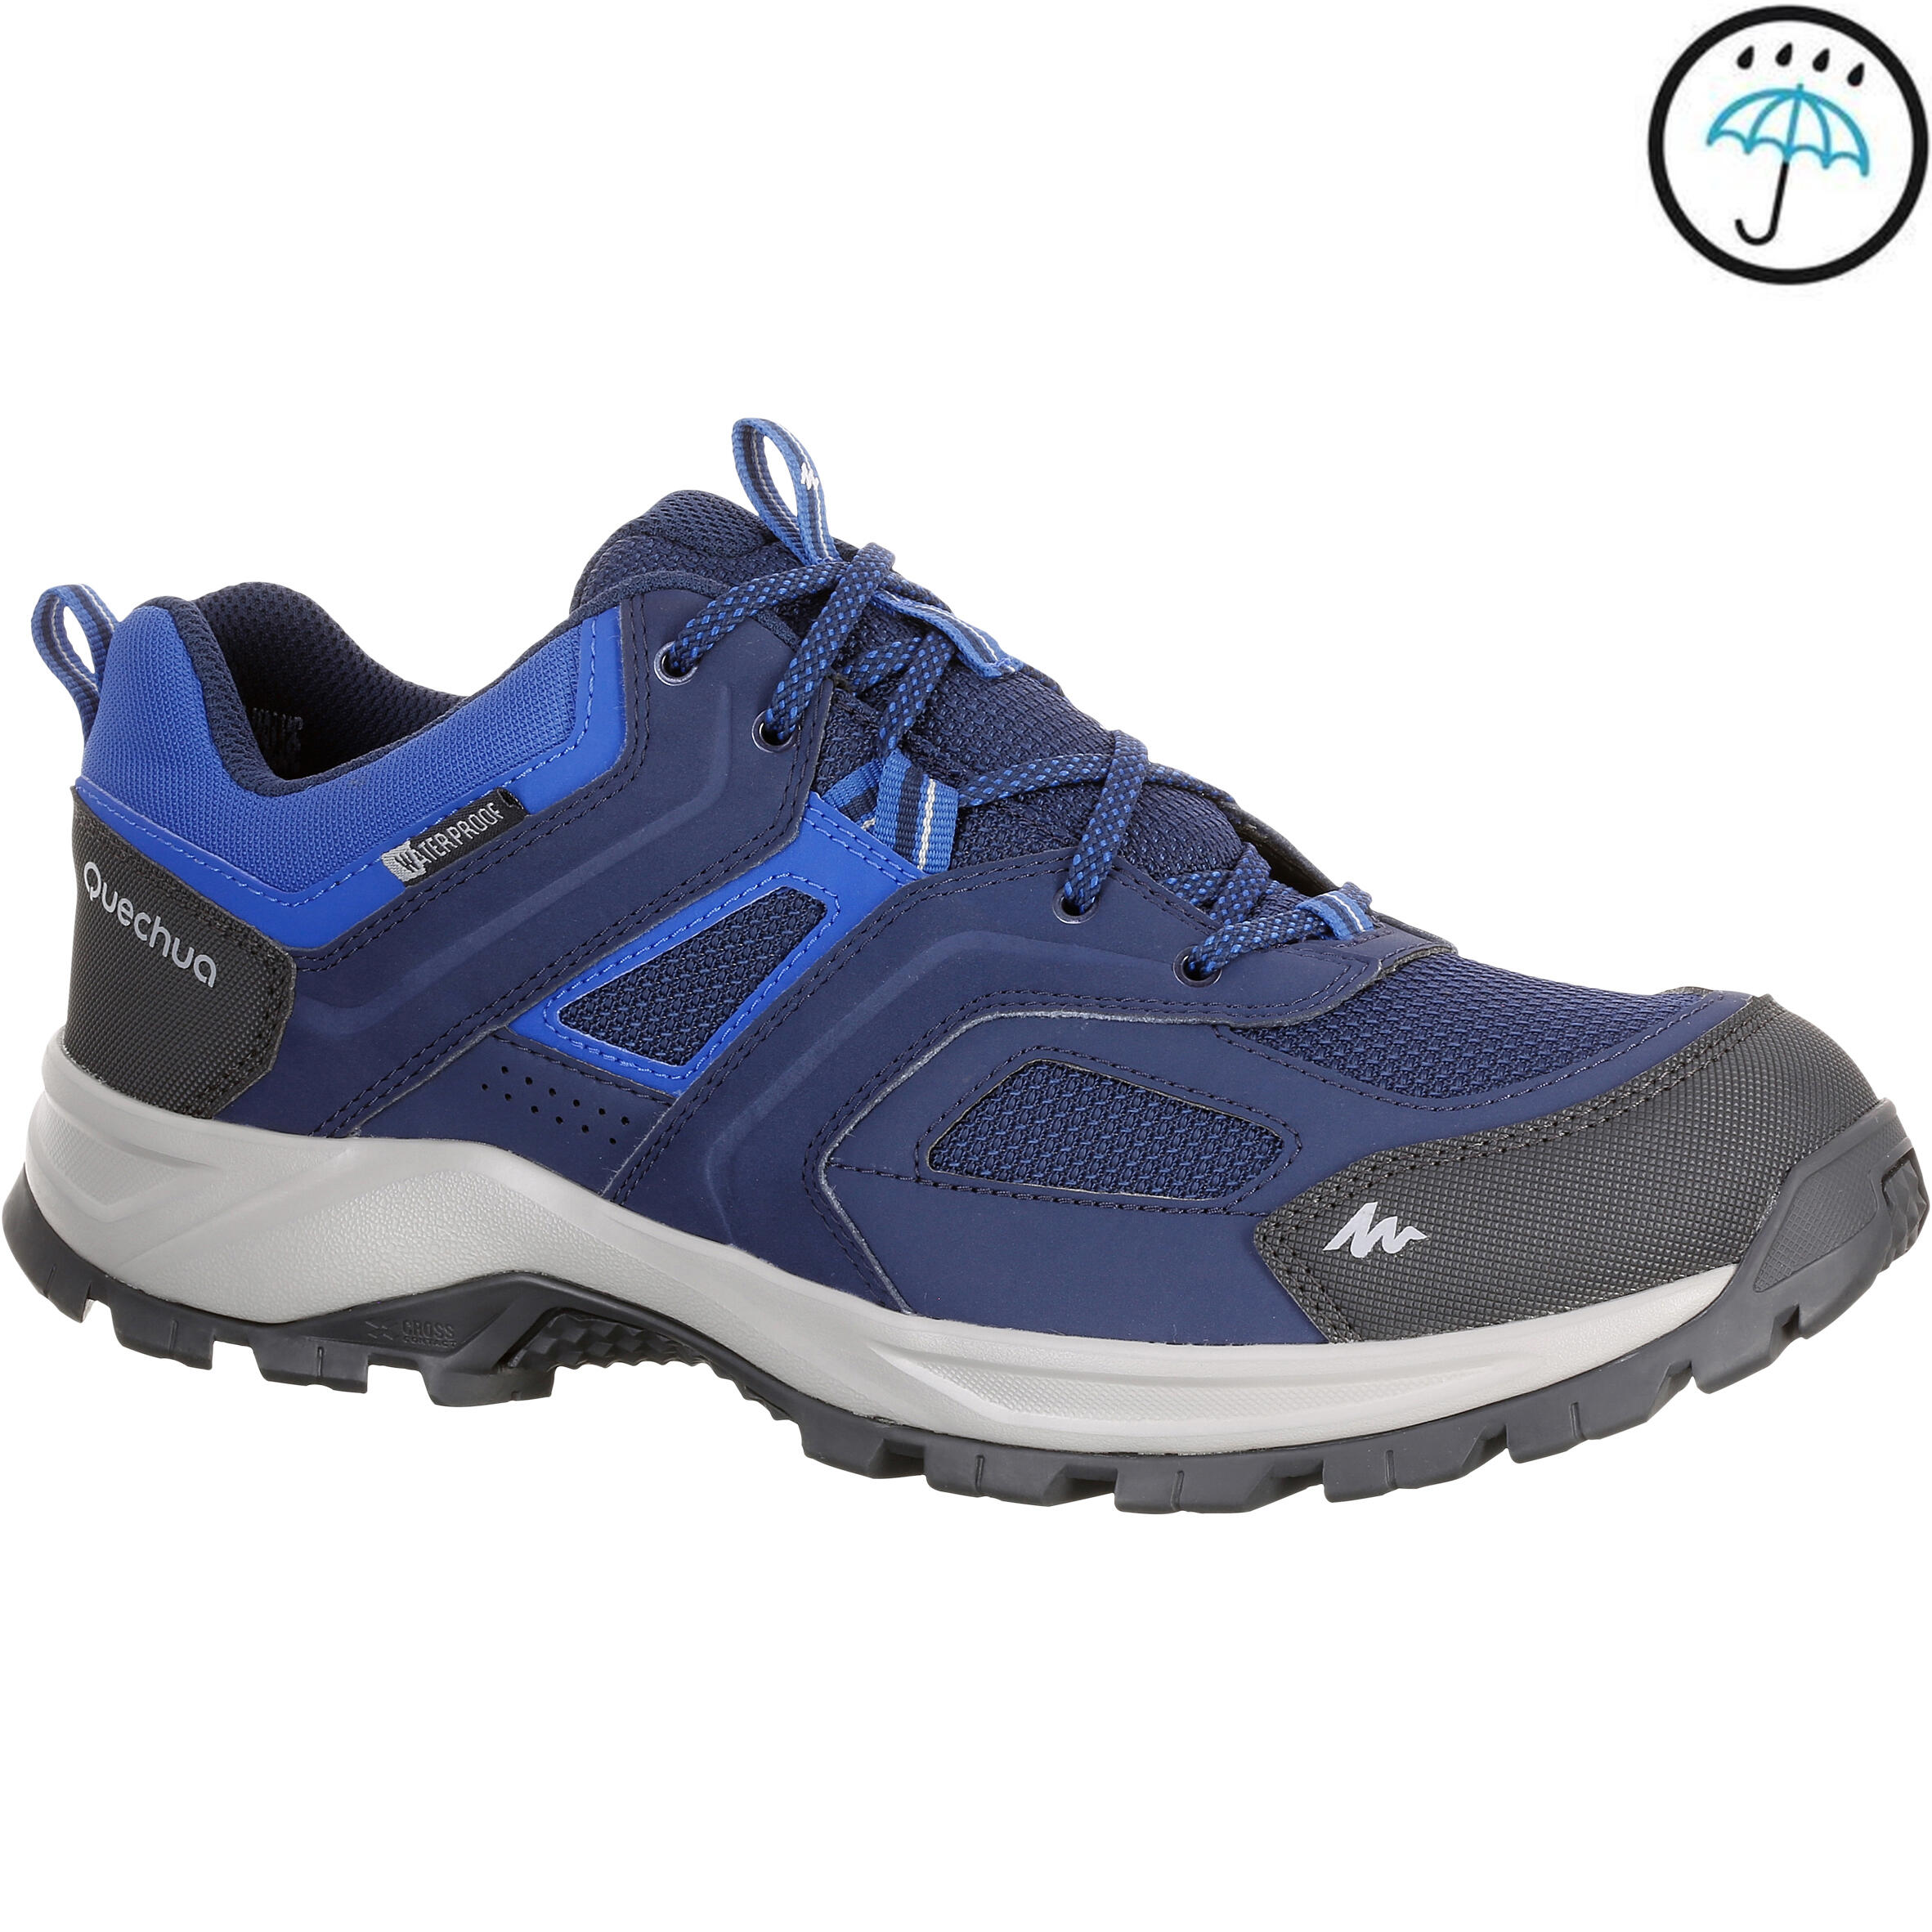 QUECHUA MH100 waterproof Men's Hiking shoes blue